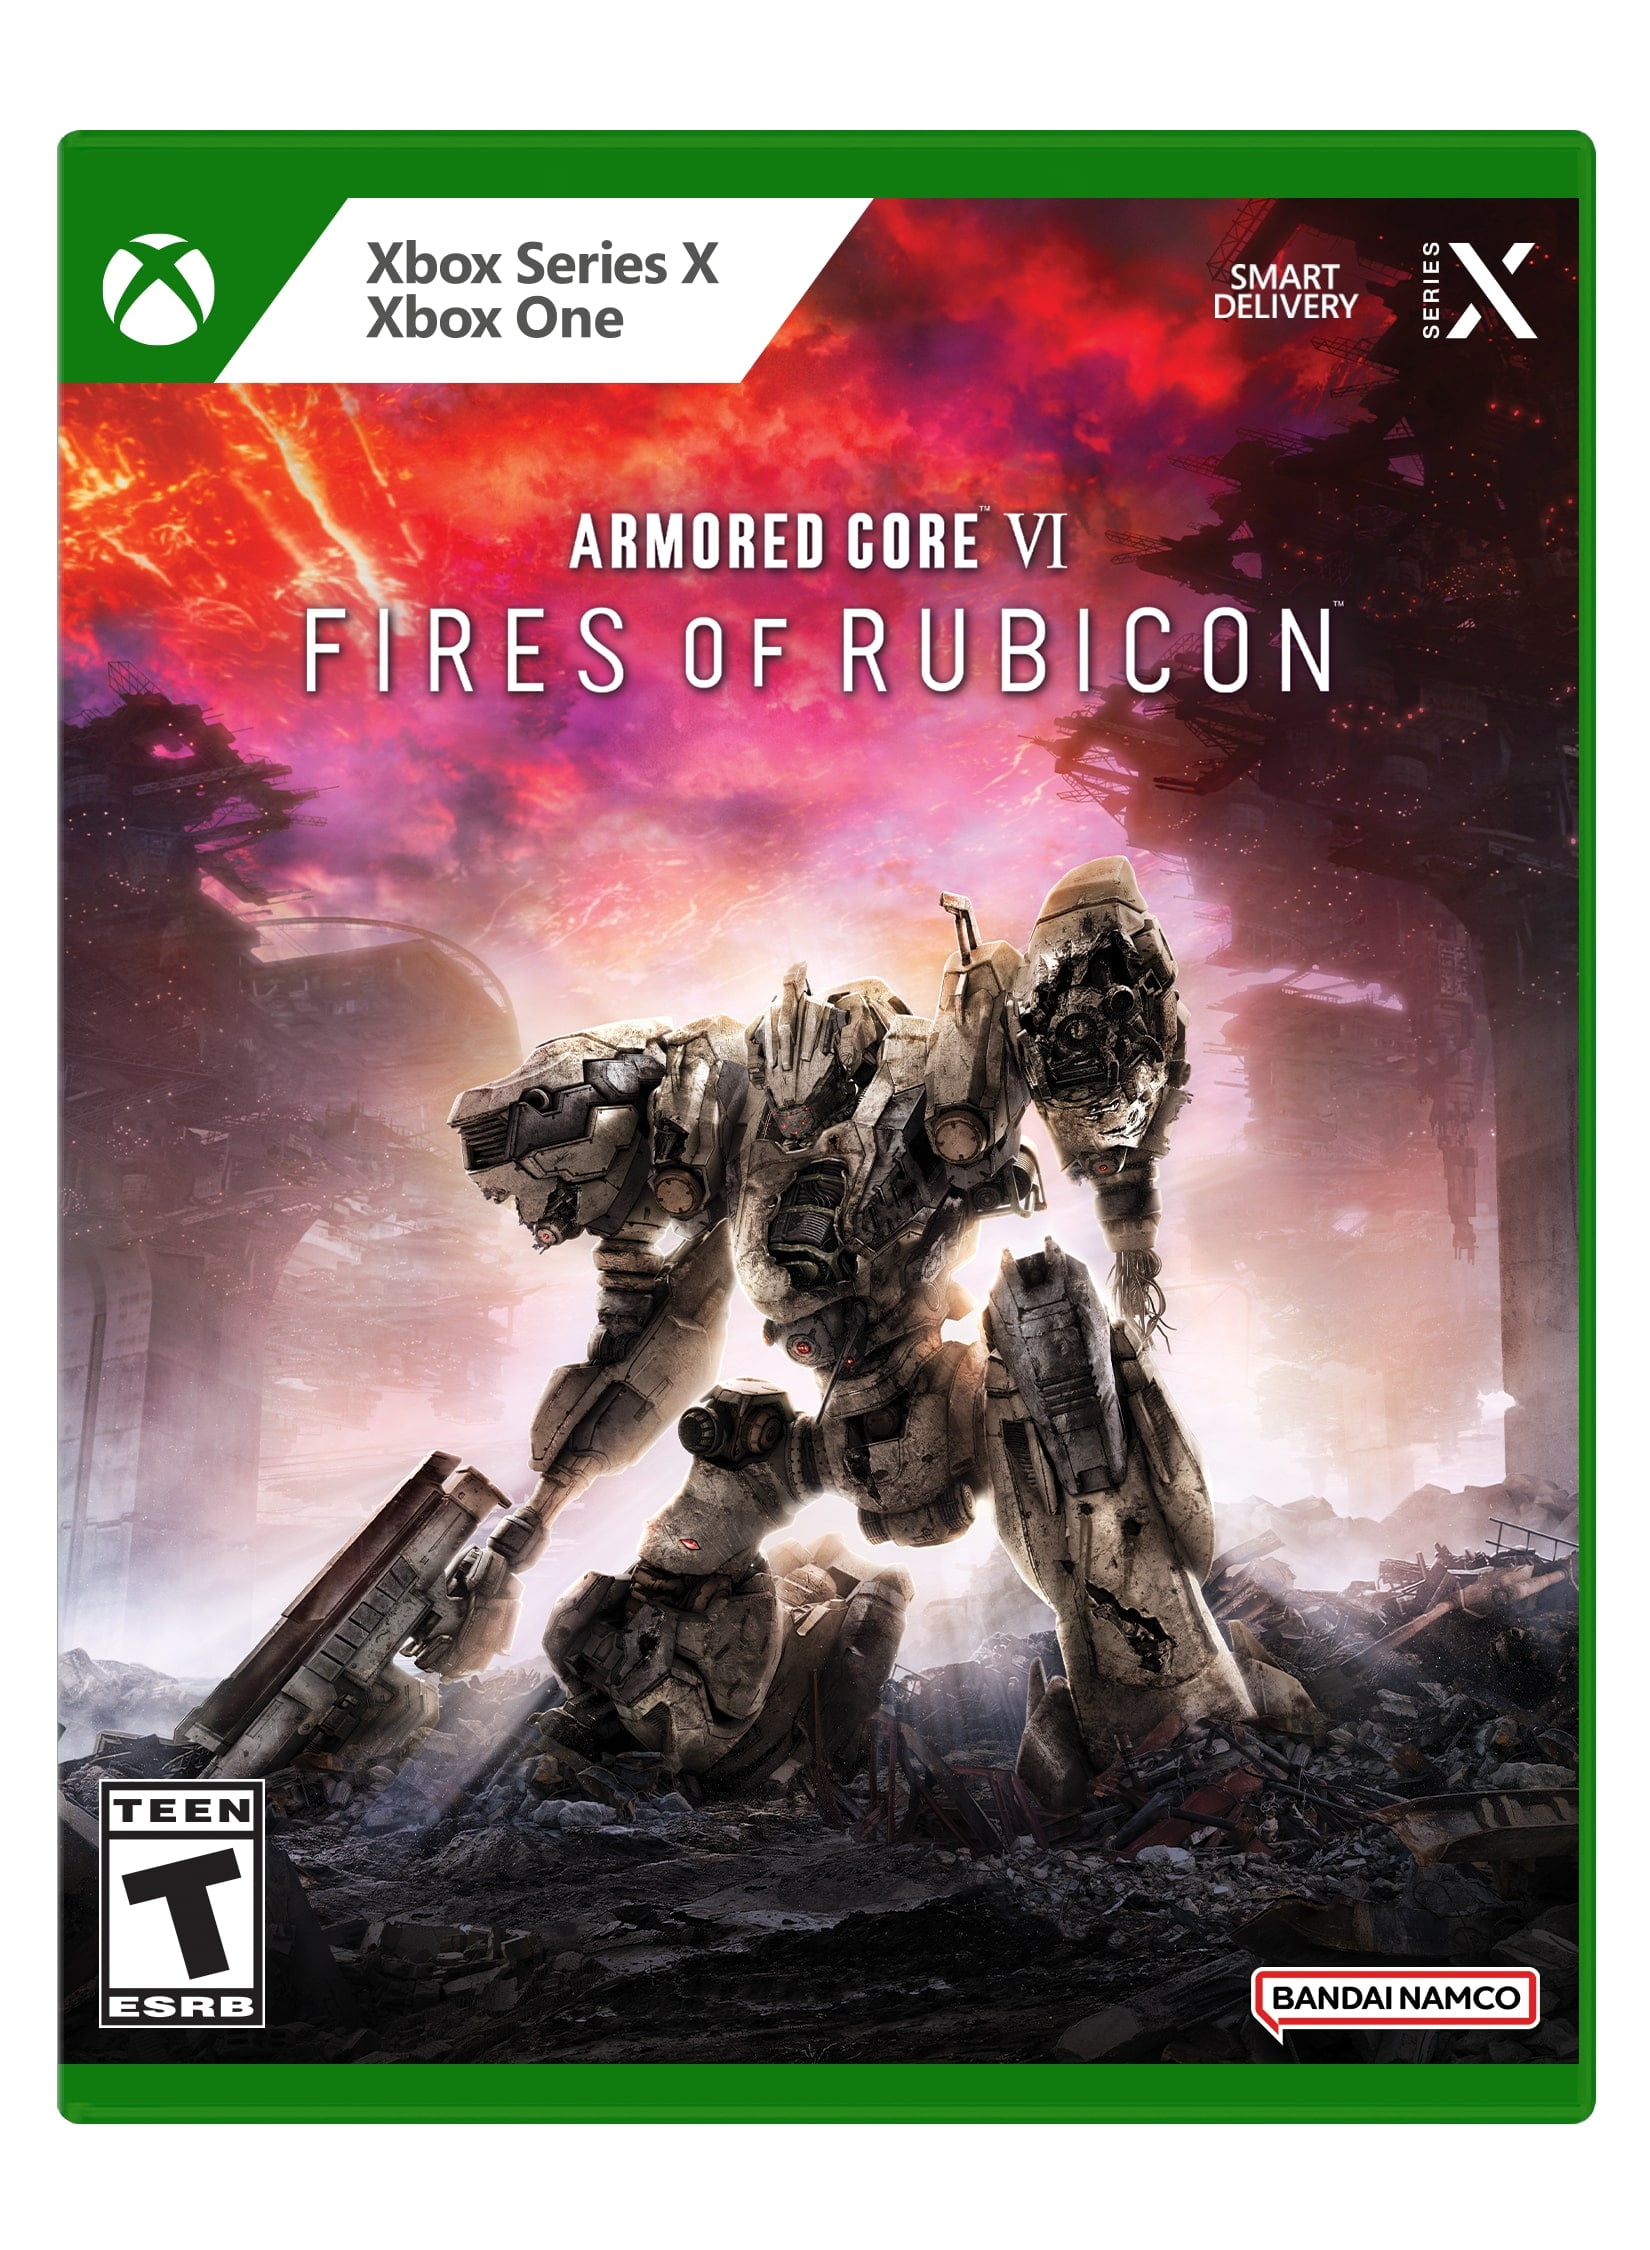 Xbox ARMORED CORE VI FIRES OF RUBICON $30